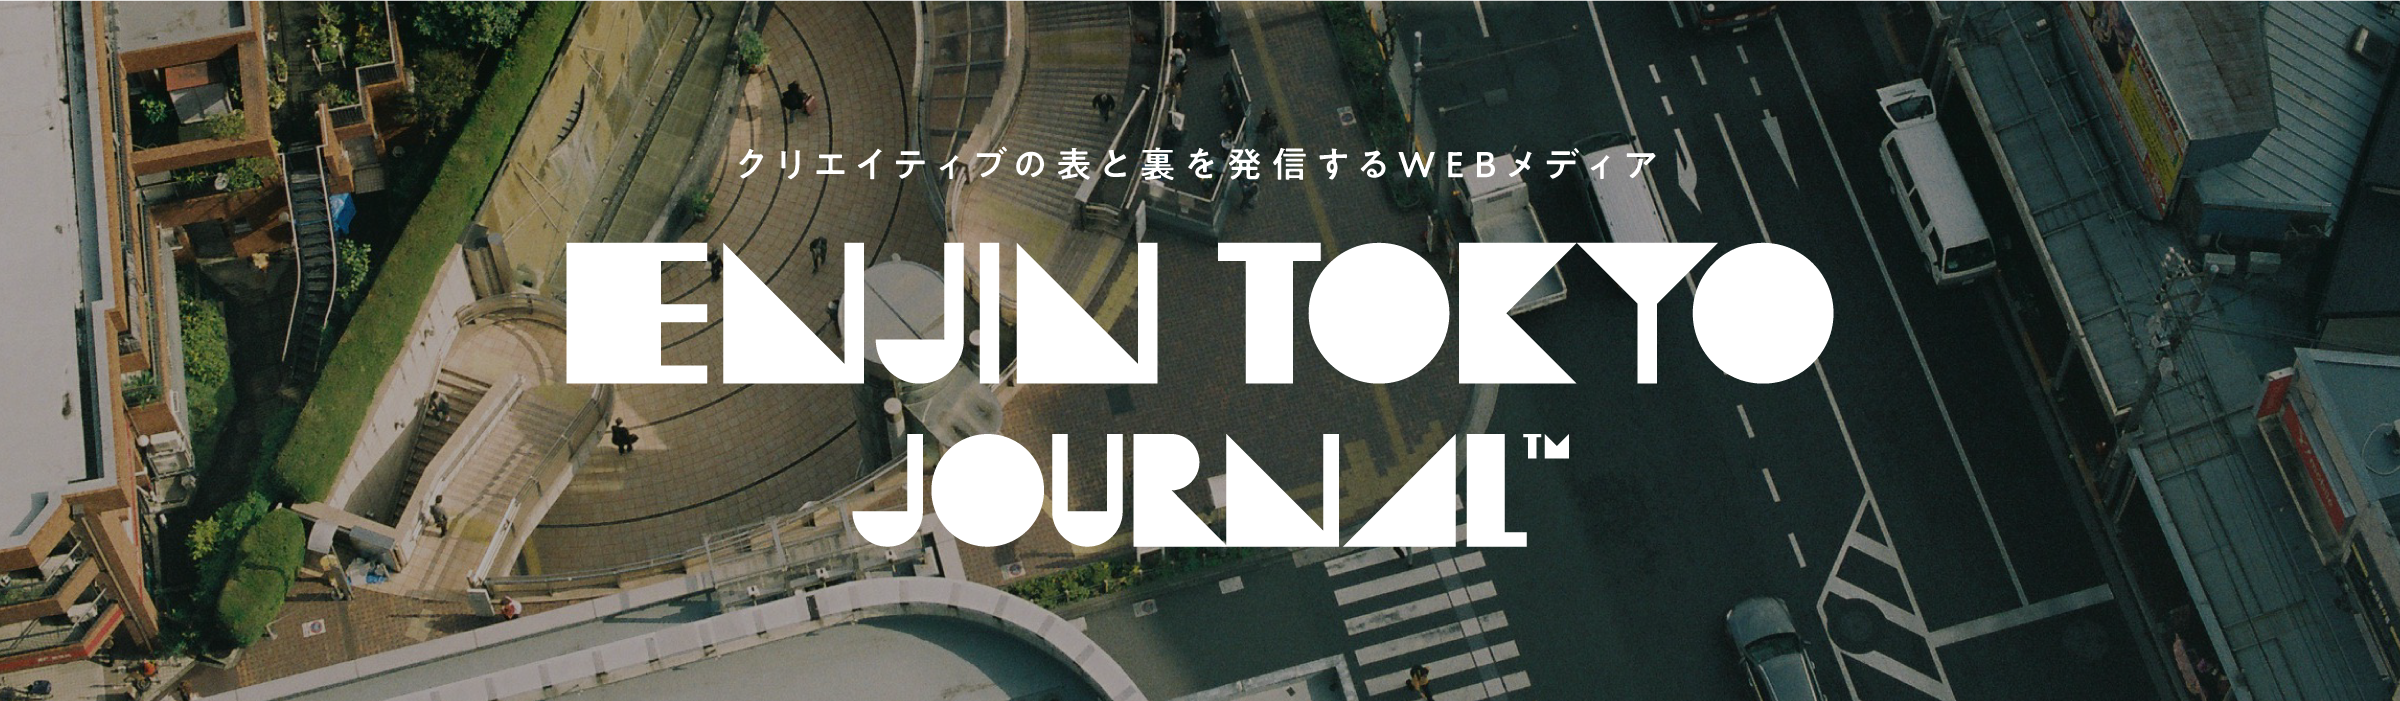 クリエイティブの表と裏を発信するWEBメディアENJIN TOKYO JOURNAL